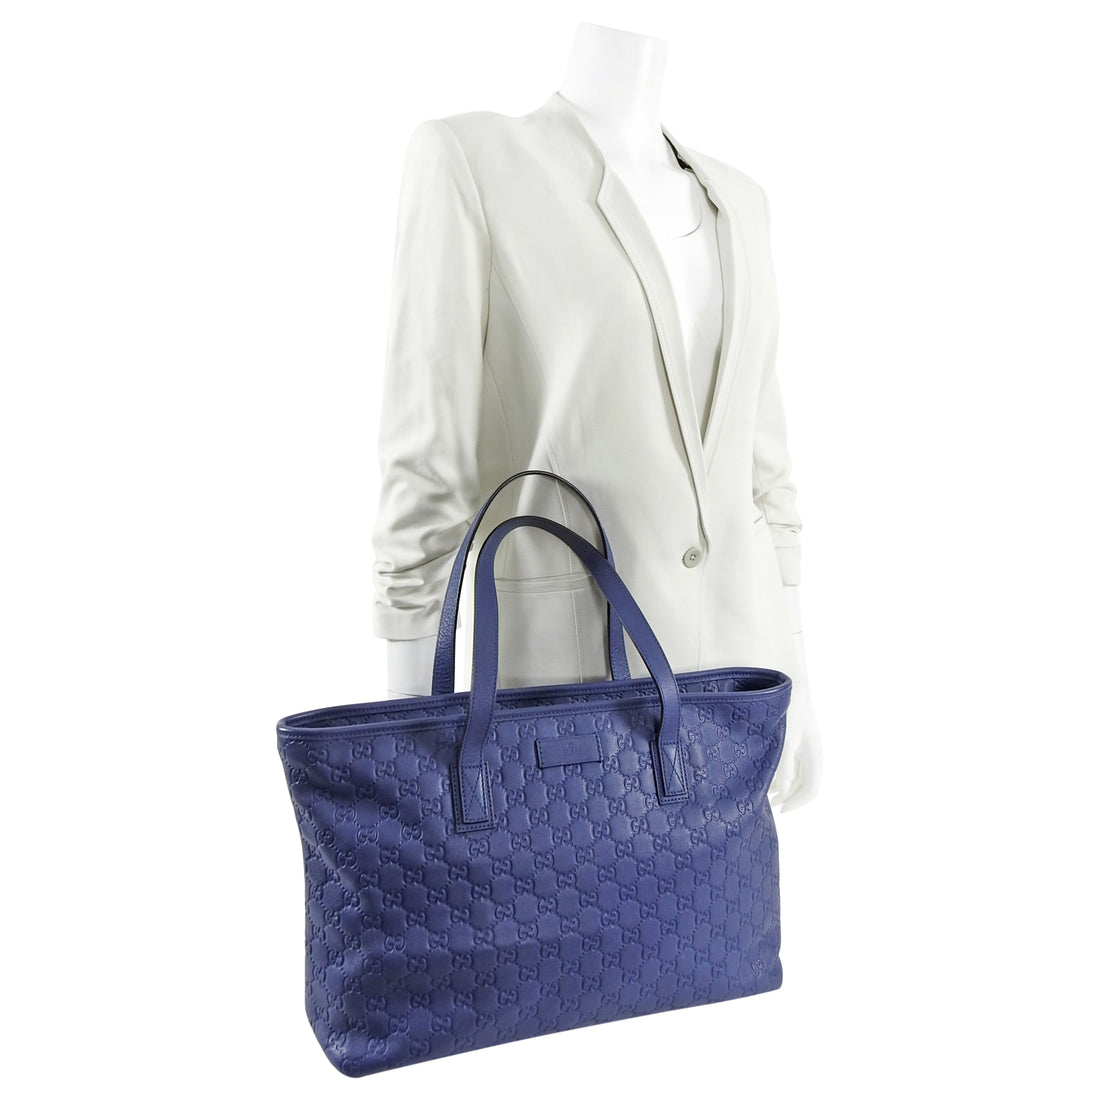 Gucci Guccissima Blue Leather Tote Shopper Bag